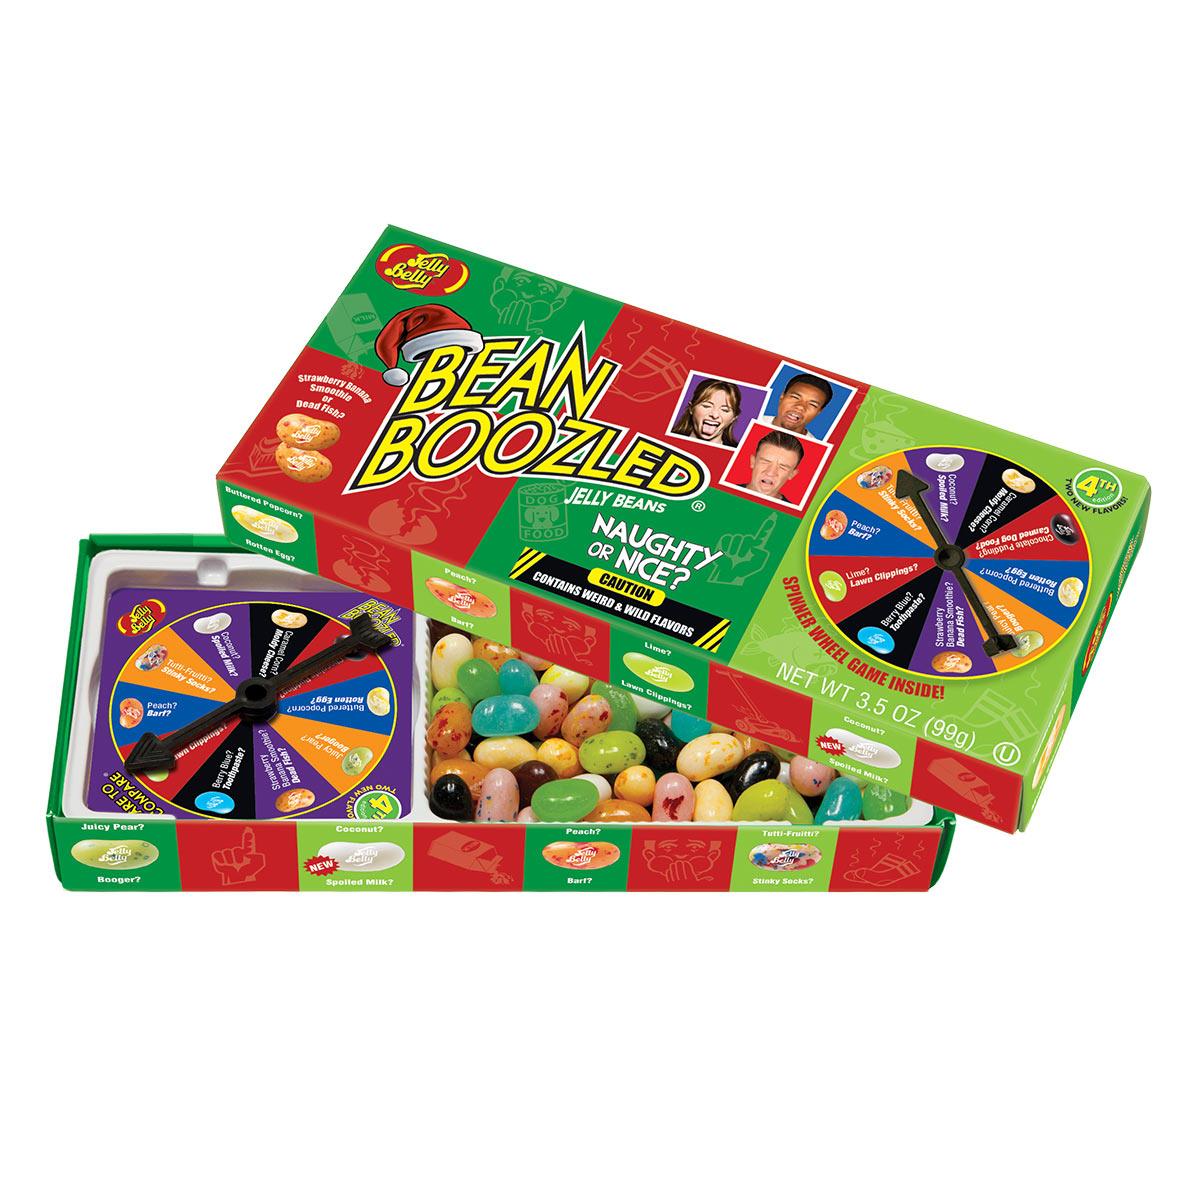 Цукерки Bean Boozled рулетка Новорічна оновлена. Боби Jelly Belly (несмачні цукерки з грою)